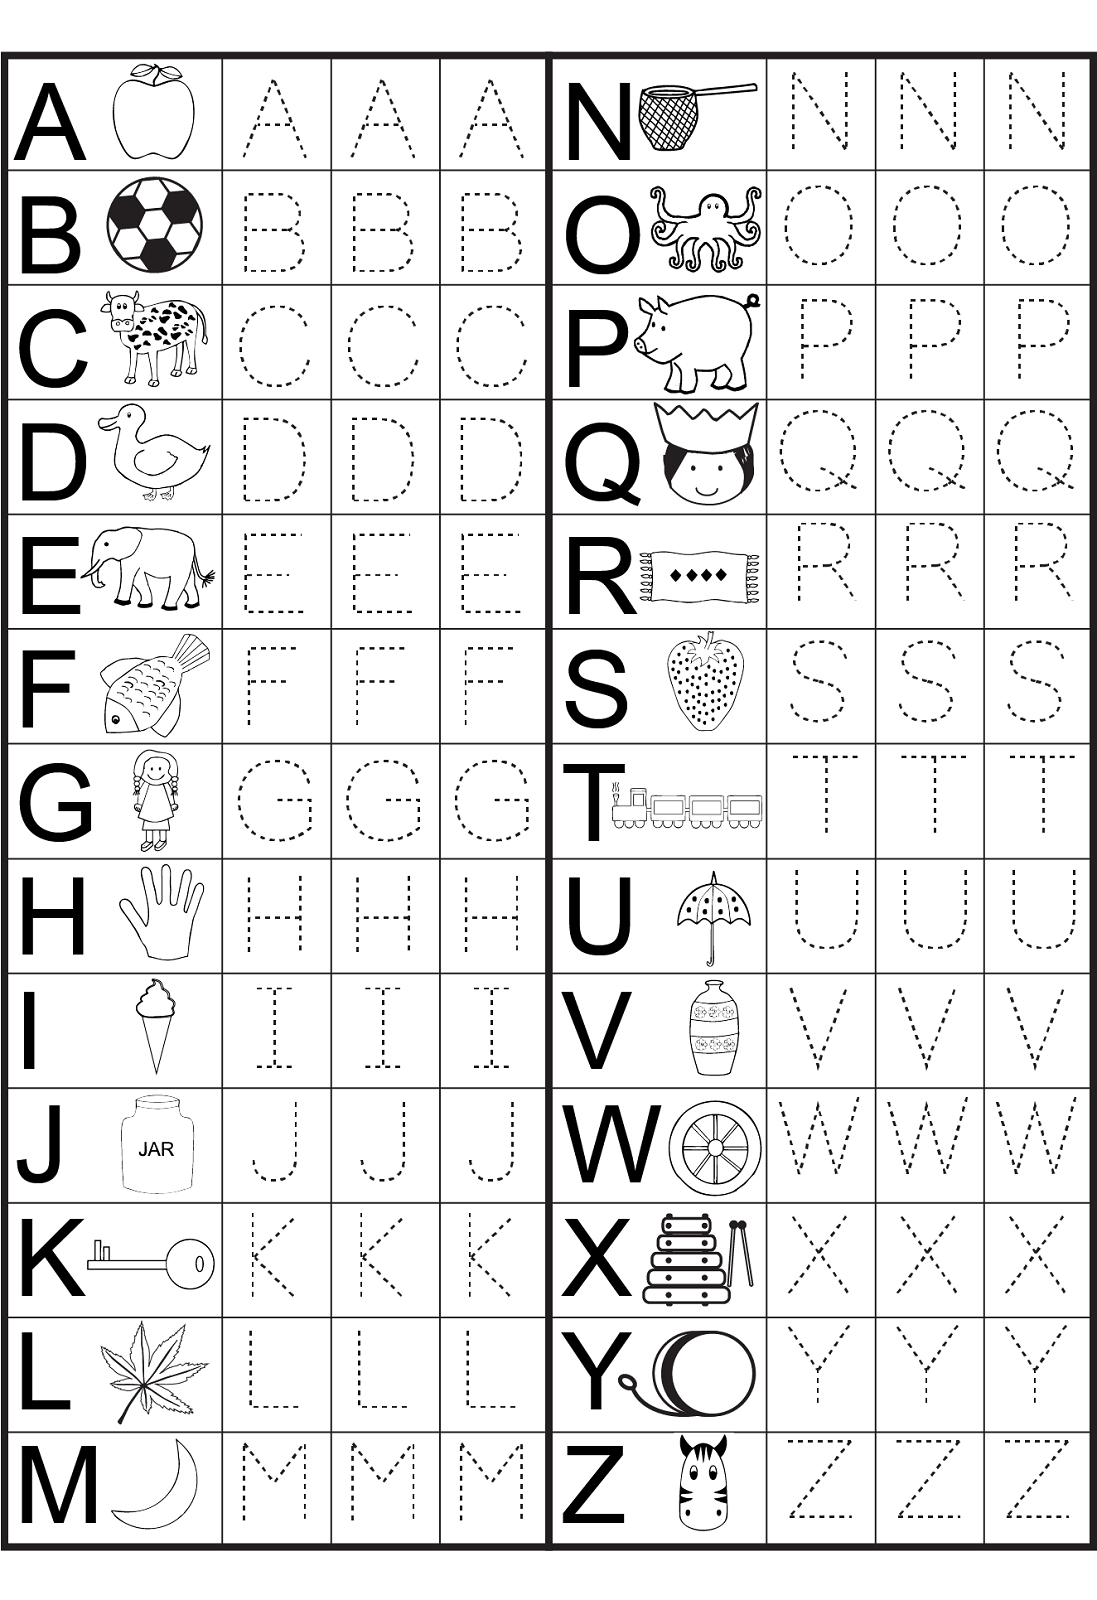 Kindergarten Alphabet Worksheets To Print | Preschool in Alphabet Worksheets To Print